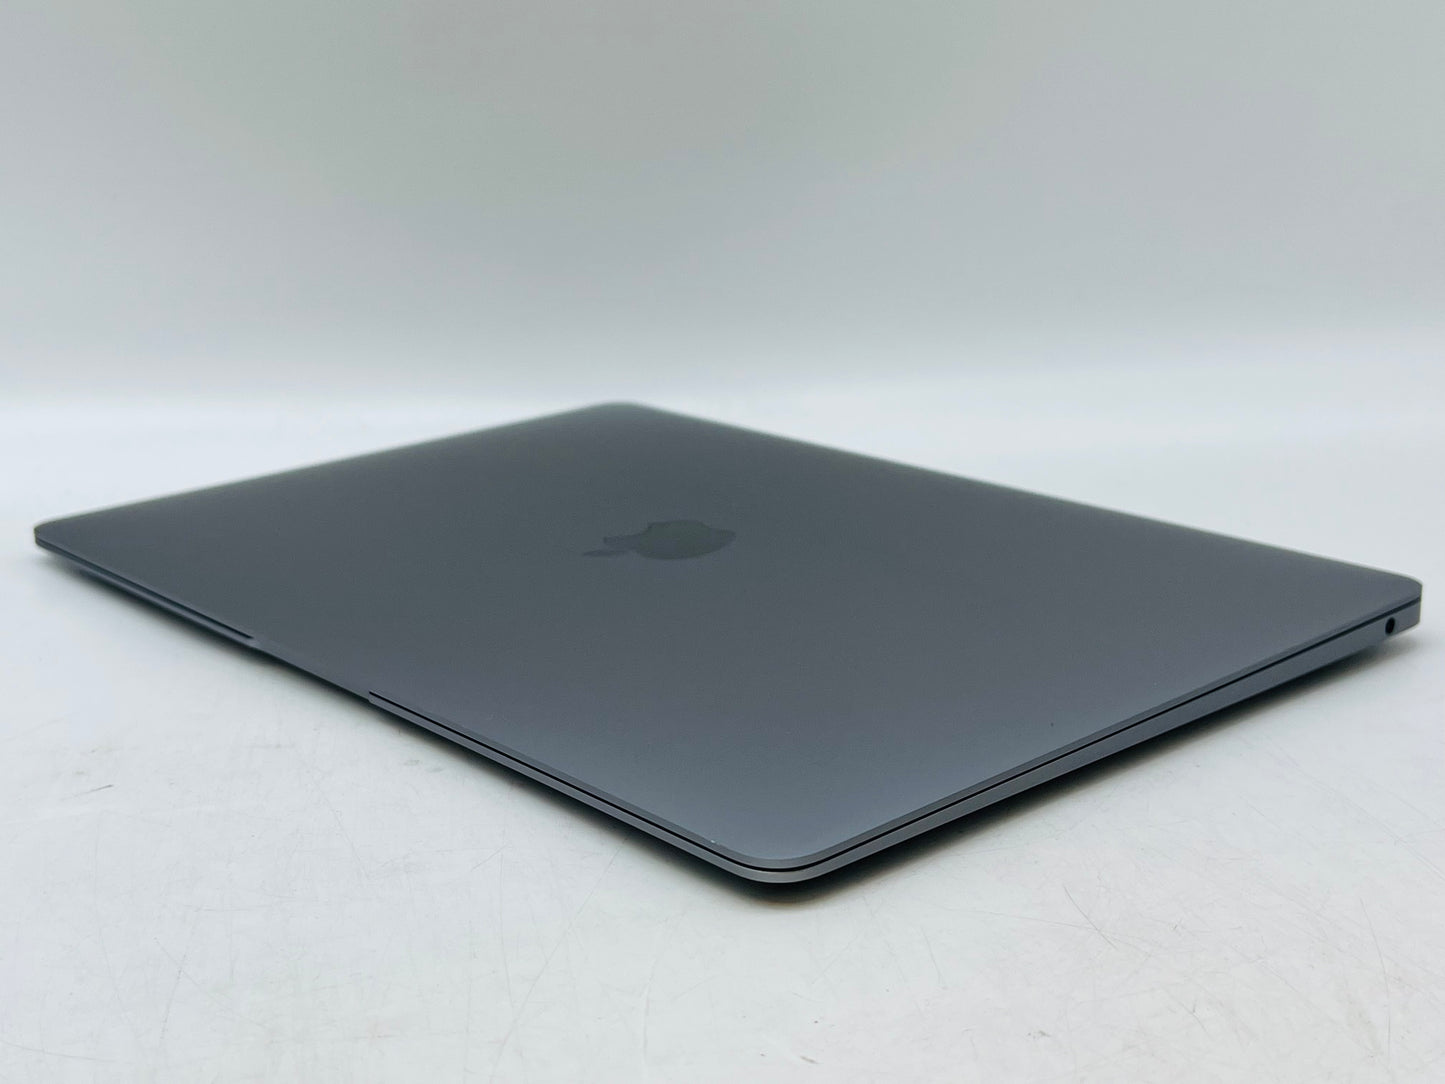 Apple 2020 MacBook Air M1 Chip 8-Core CPU 7-Core GPU 16GB RAM 256GB SSD Grade(A)